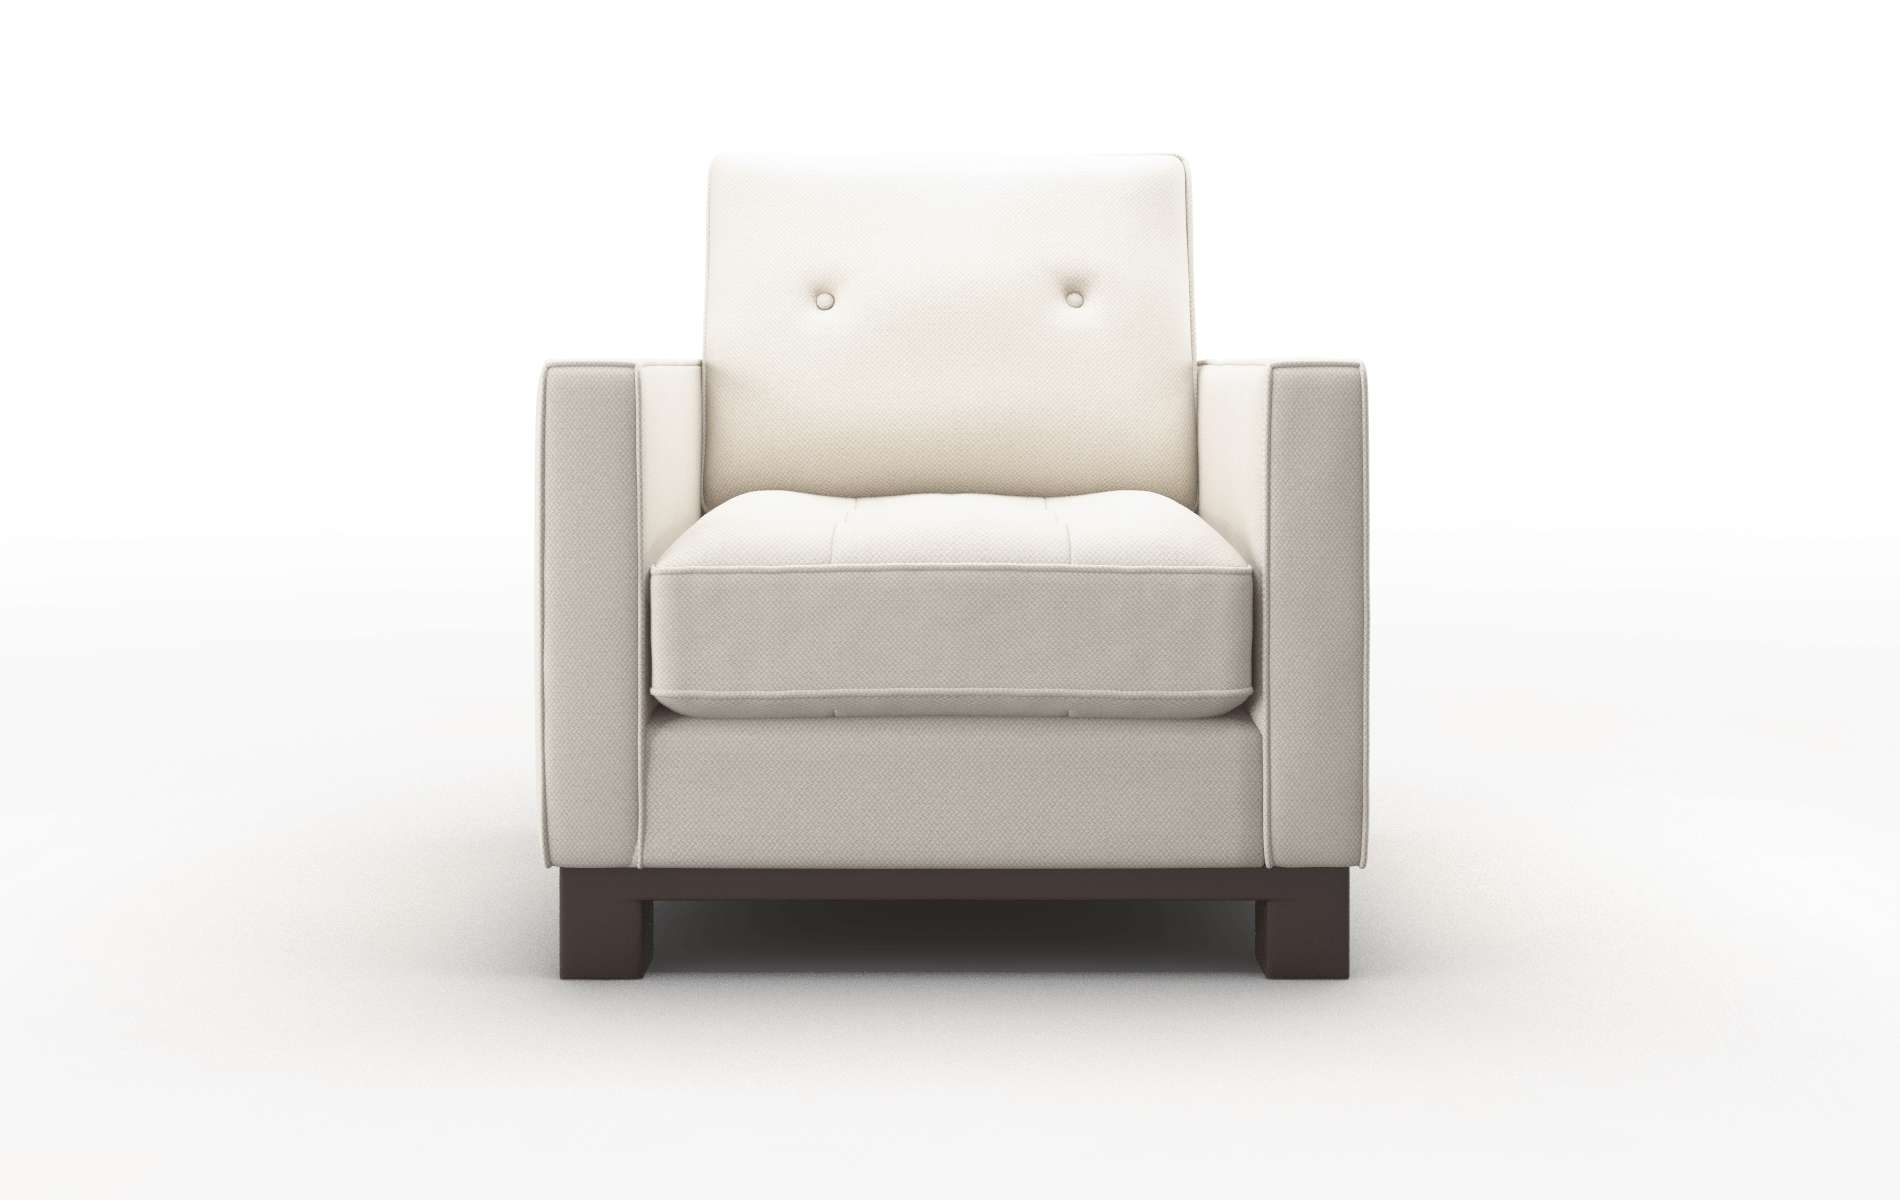 Syros Malibu Linen chair espresso legs